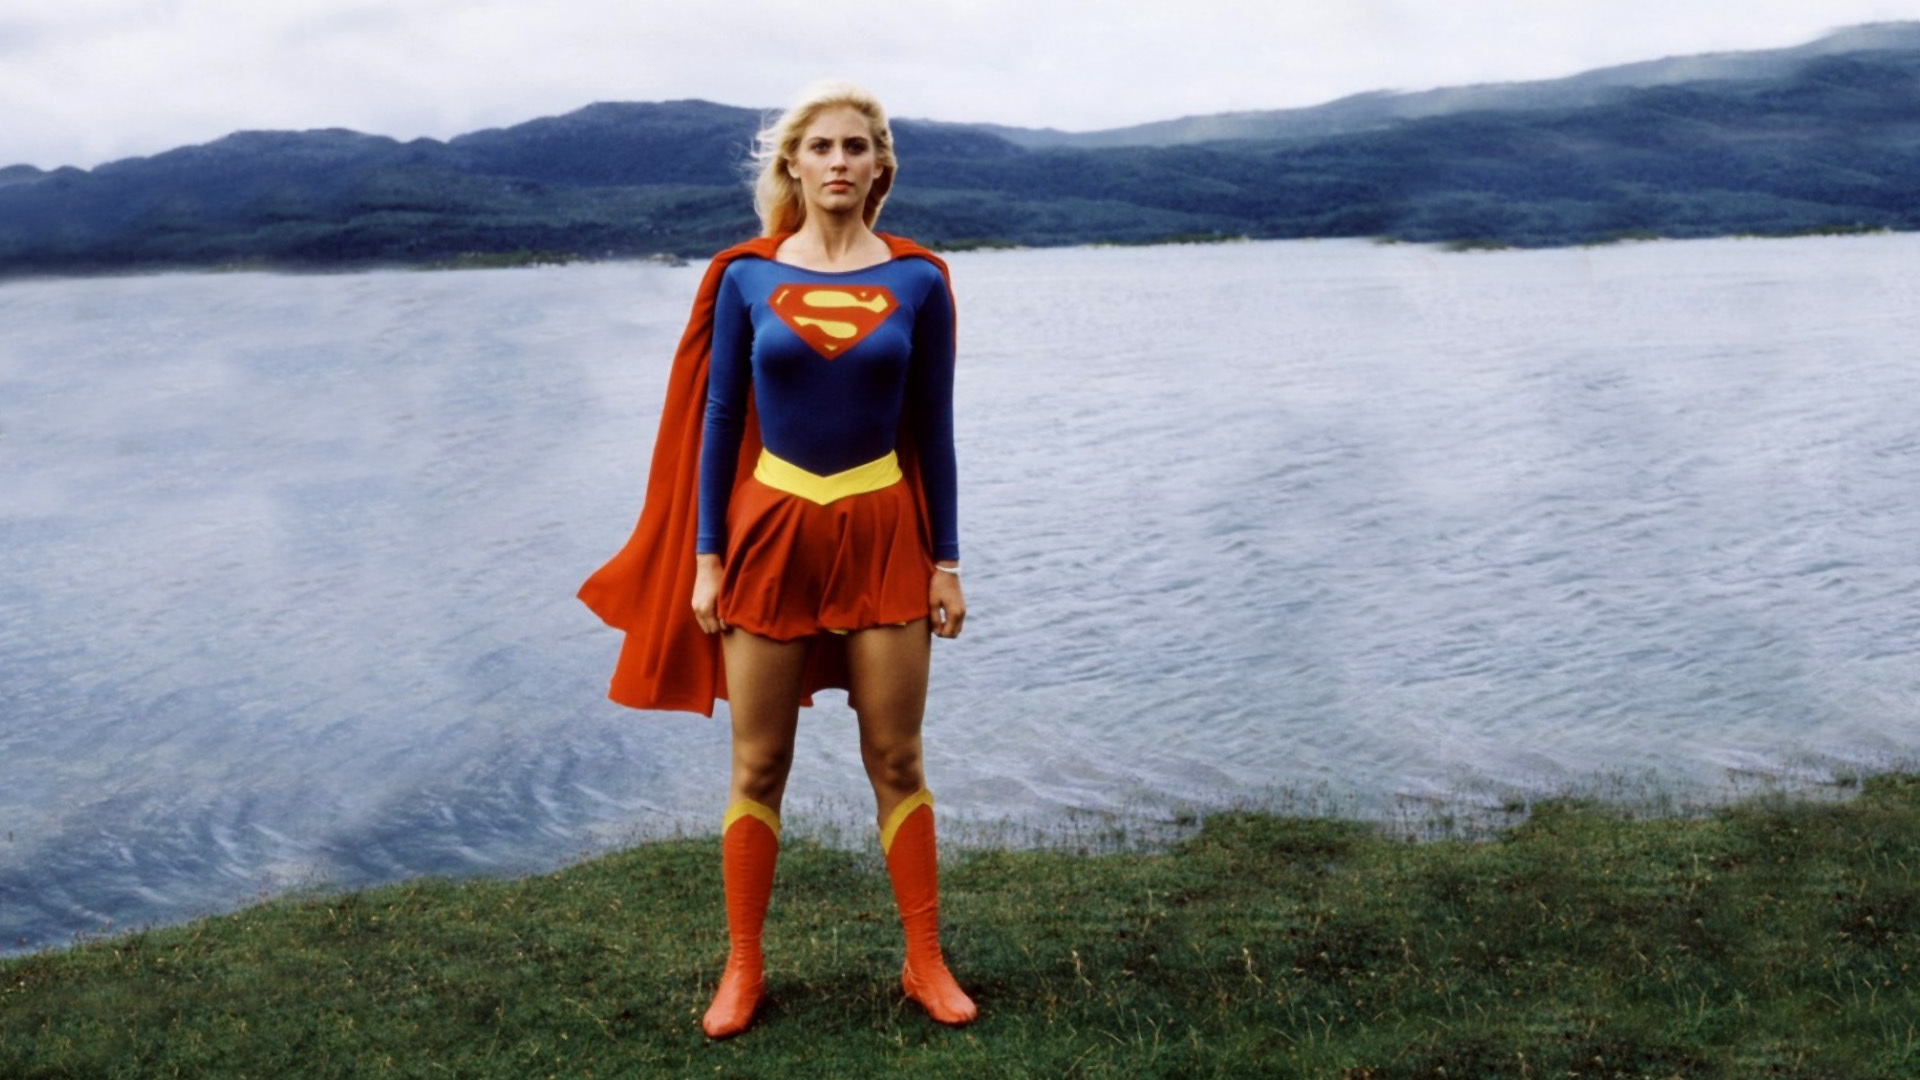 Helen Slater in Supergirl (1984)